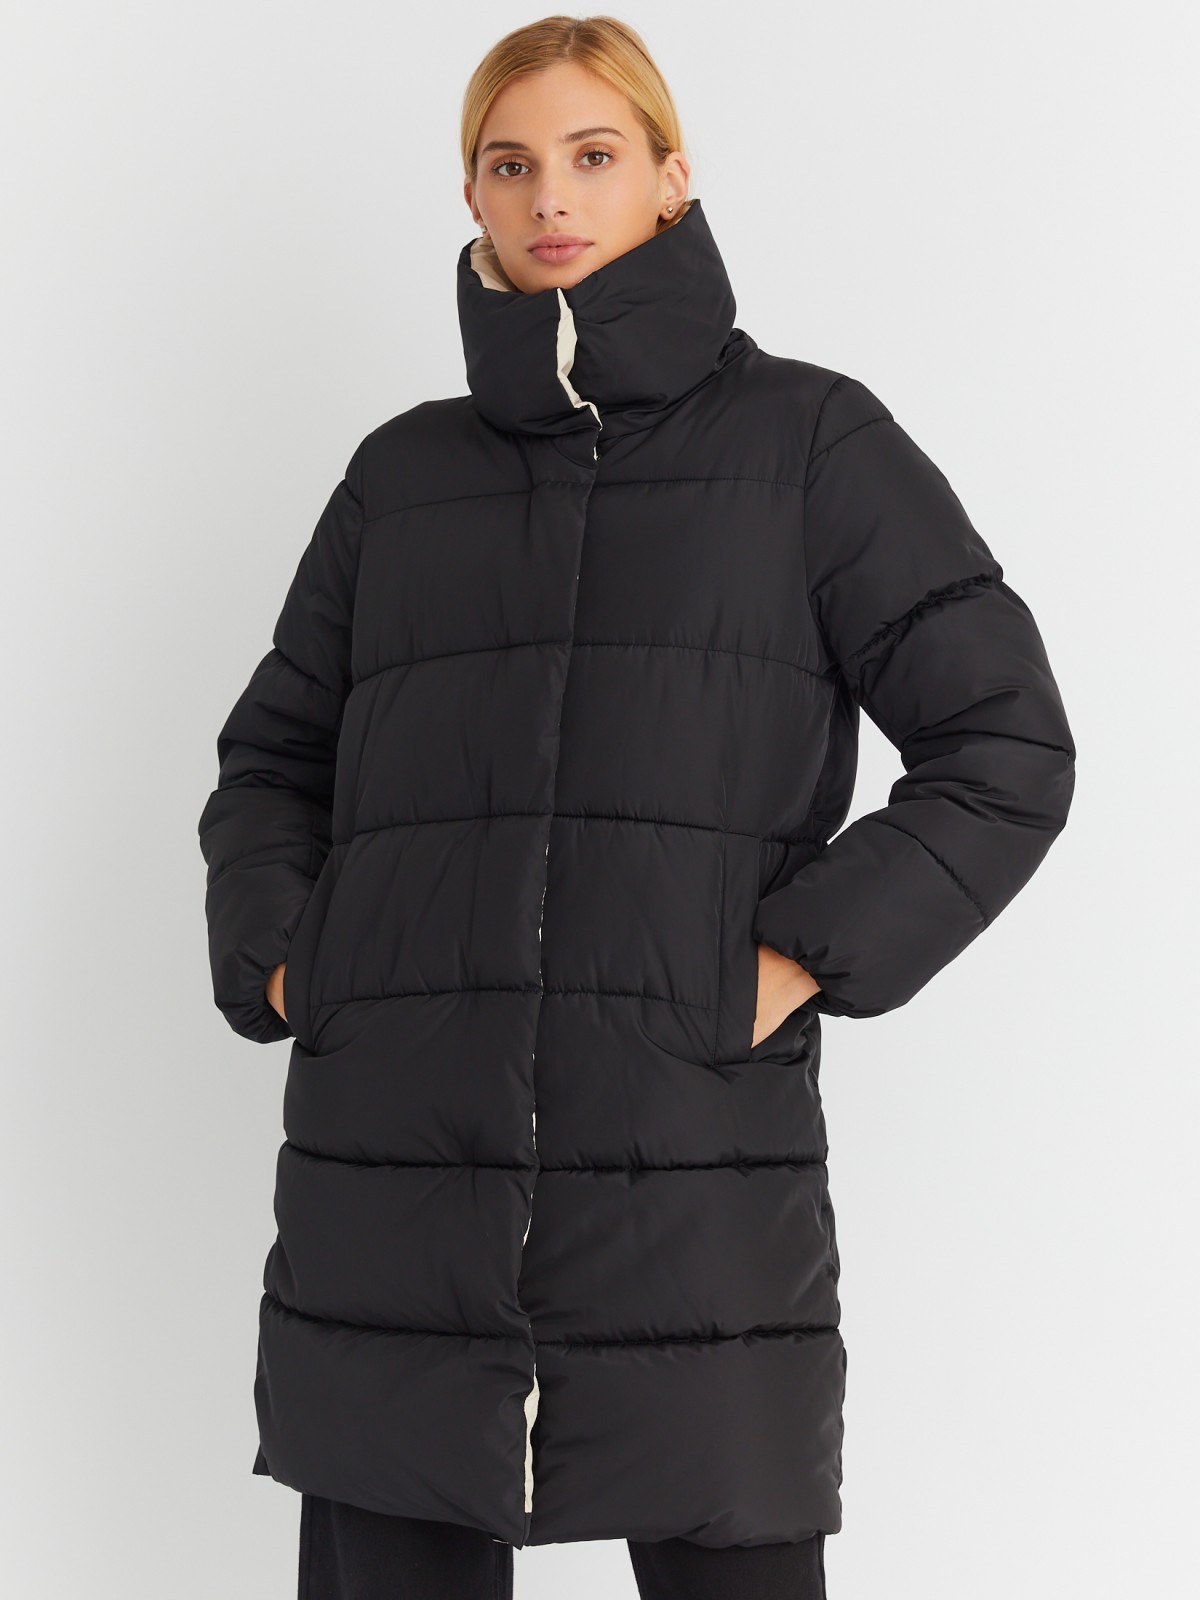 Тёплая стёганая куртка-пальто с высоким воротником zolla 023345202084, цвет черный, размер XS - фото 3